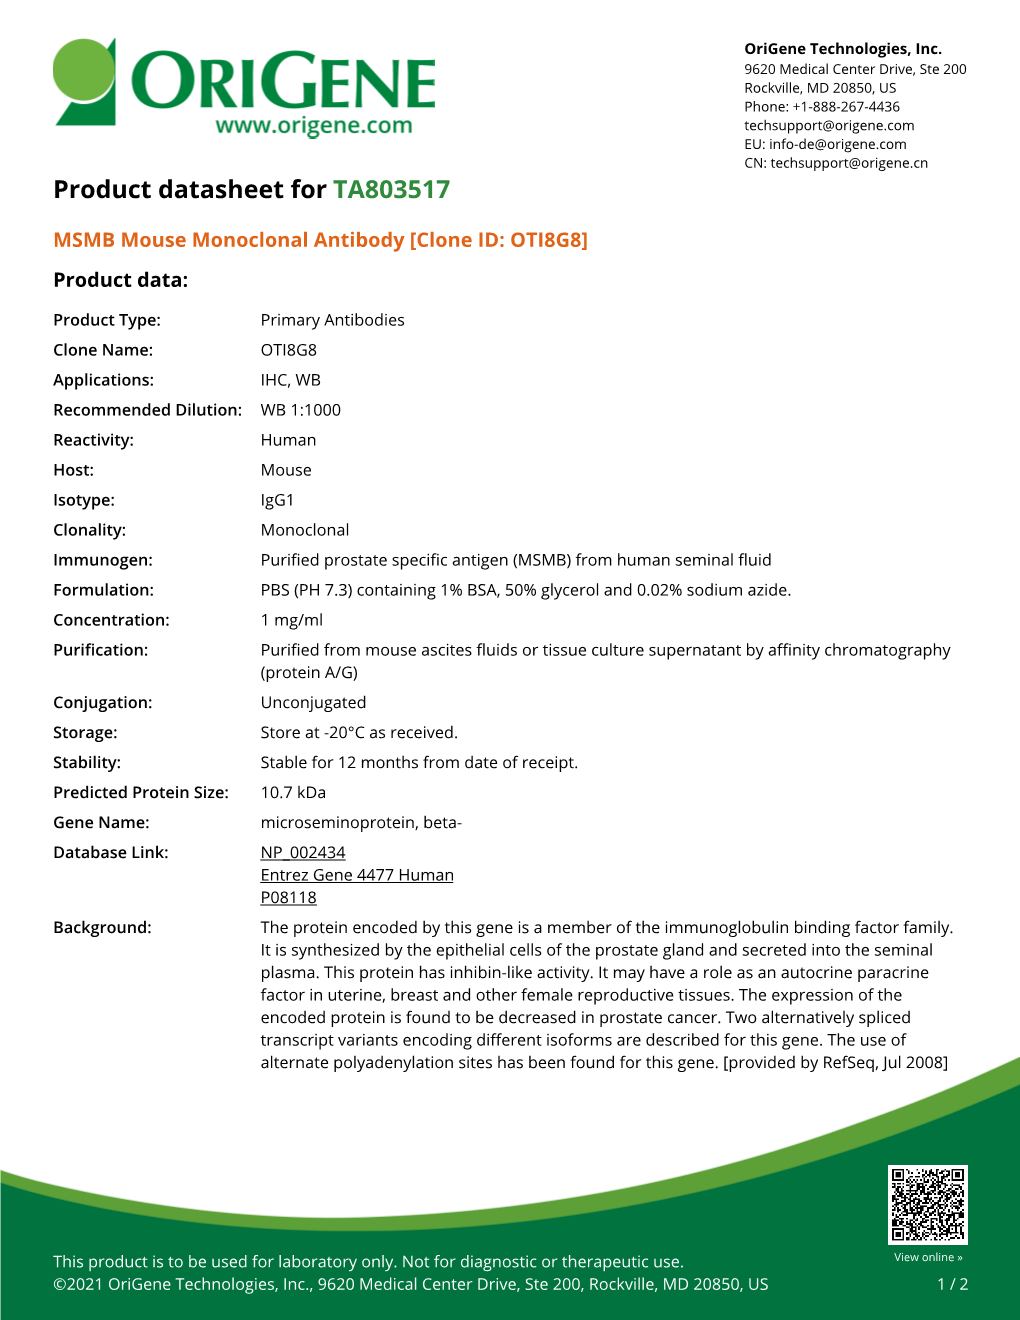 MSMB Mouse Monoclonal Antibody [Clone ID: OTI8G8] Product Data